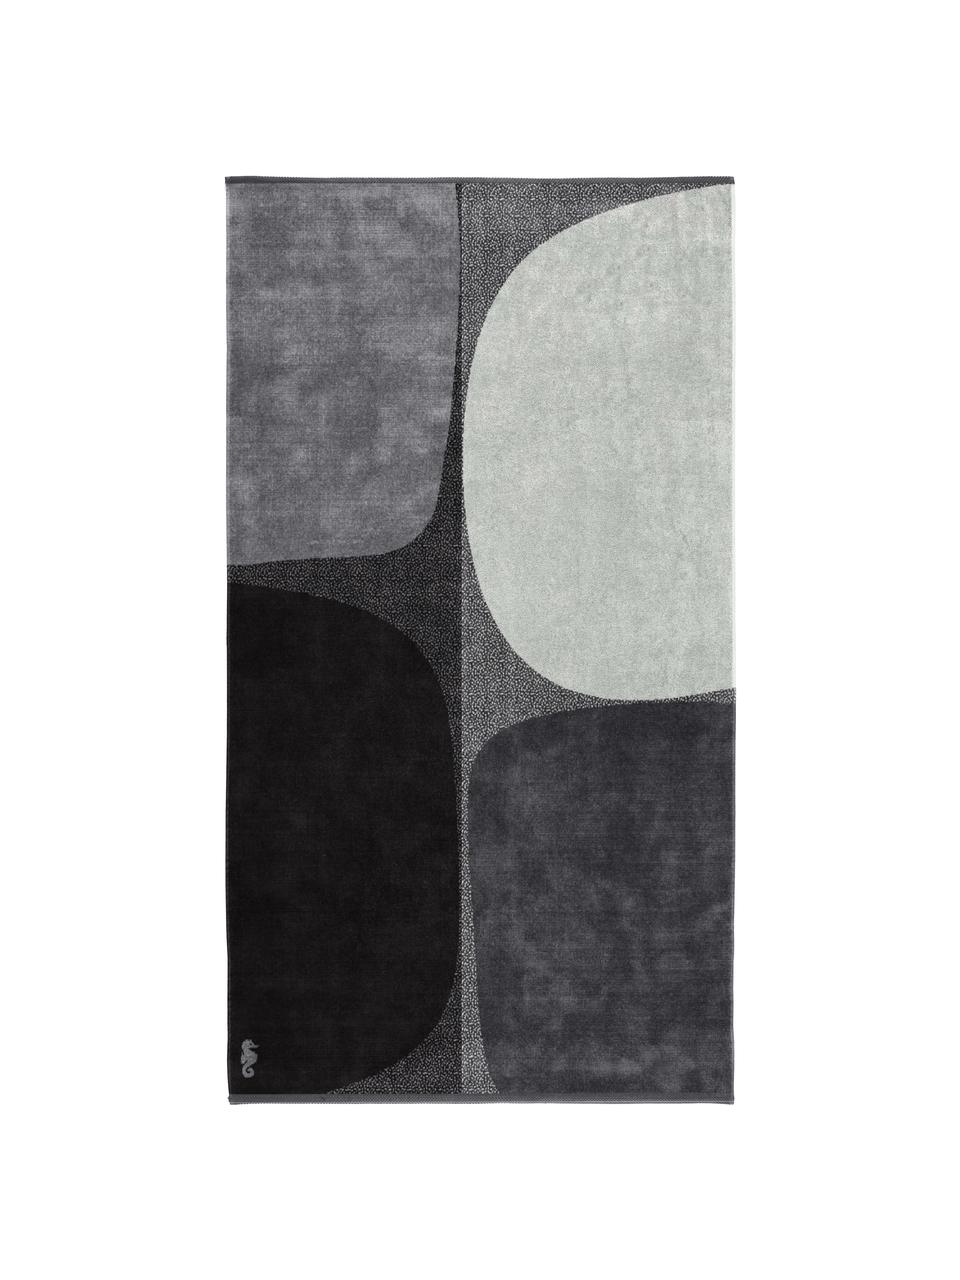 Strandlaken Stones met abstract patroon, Zwart, wit, grijs, B 100 x L 180 cm